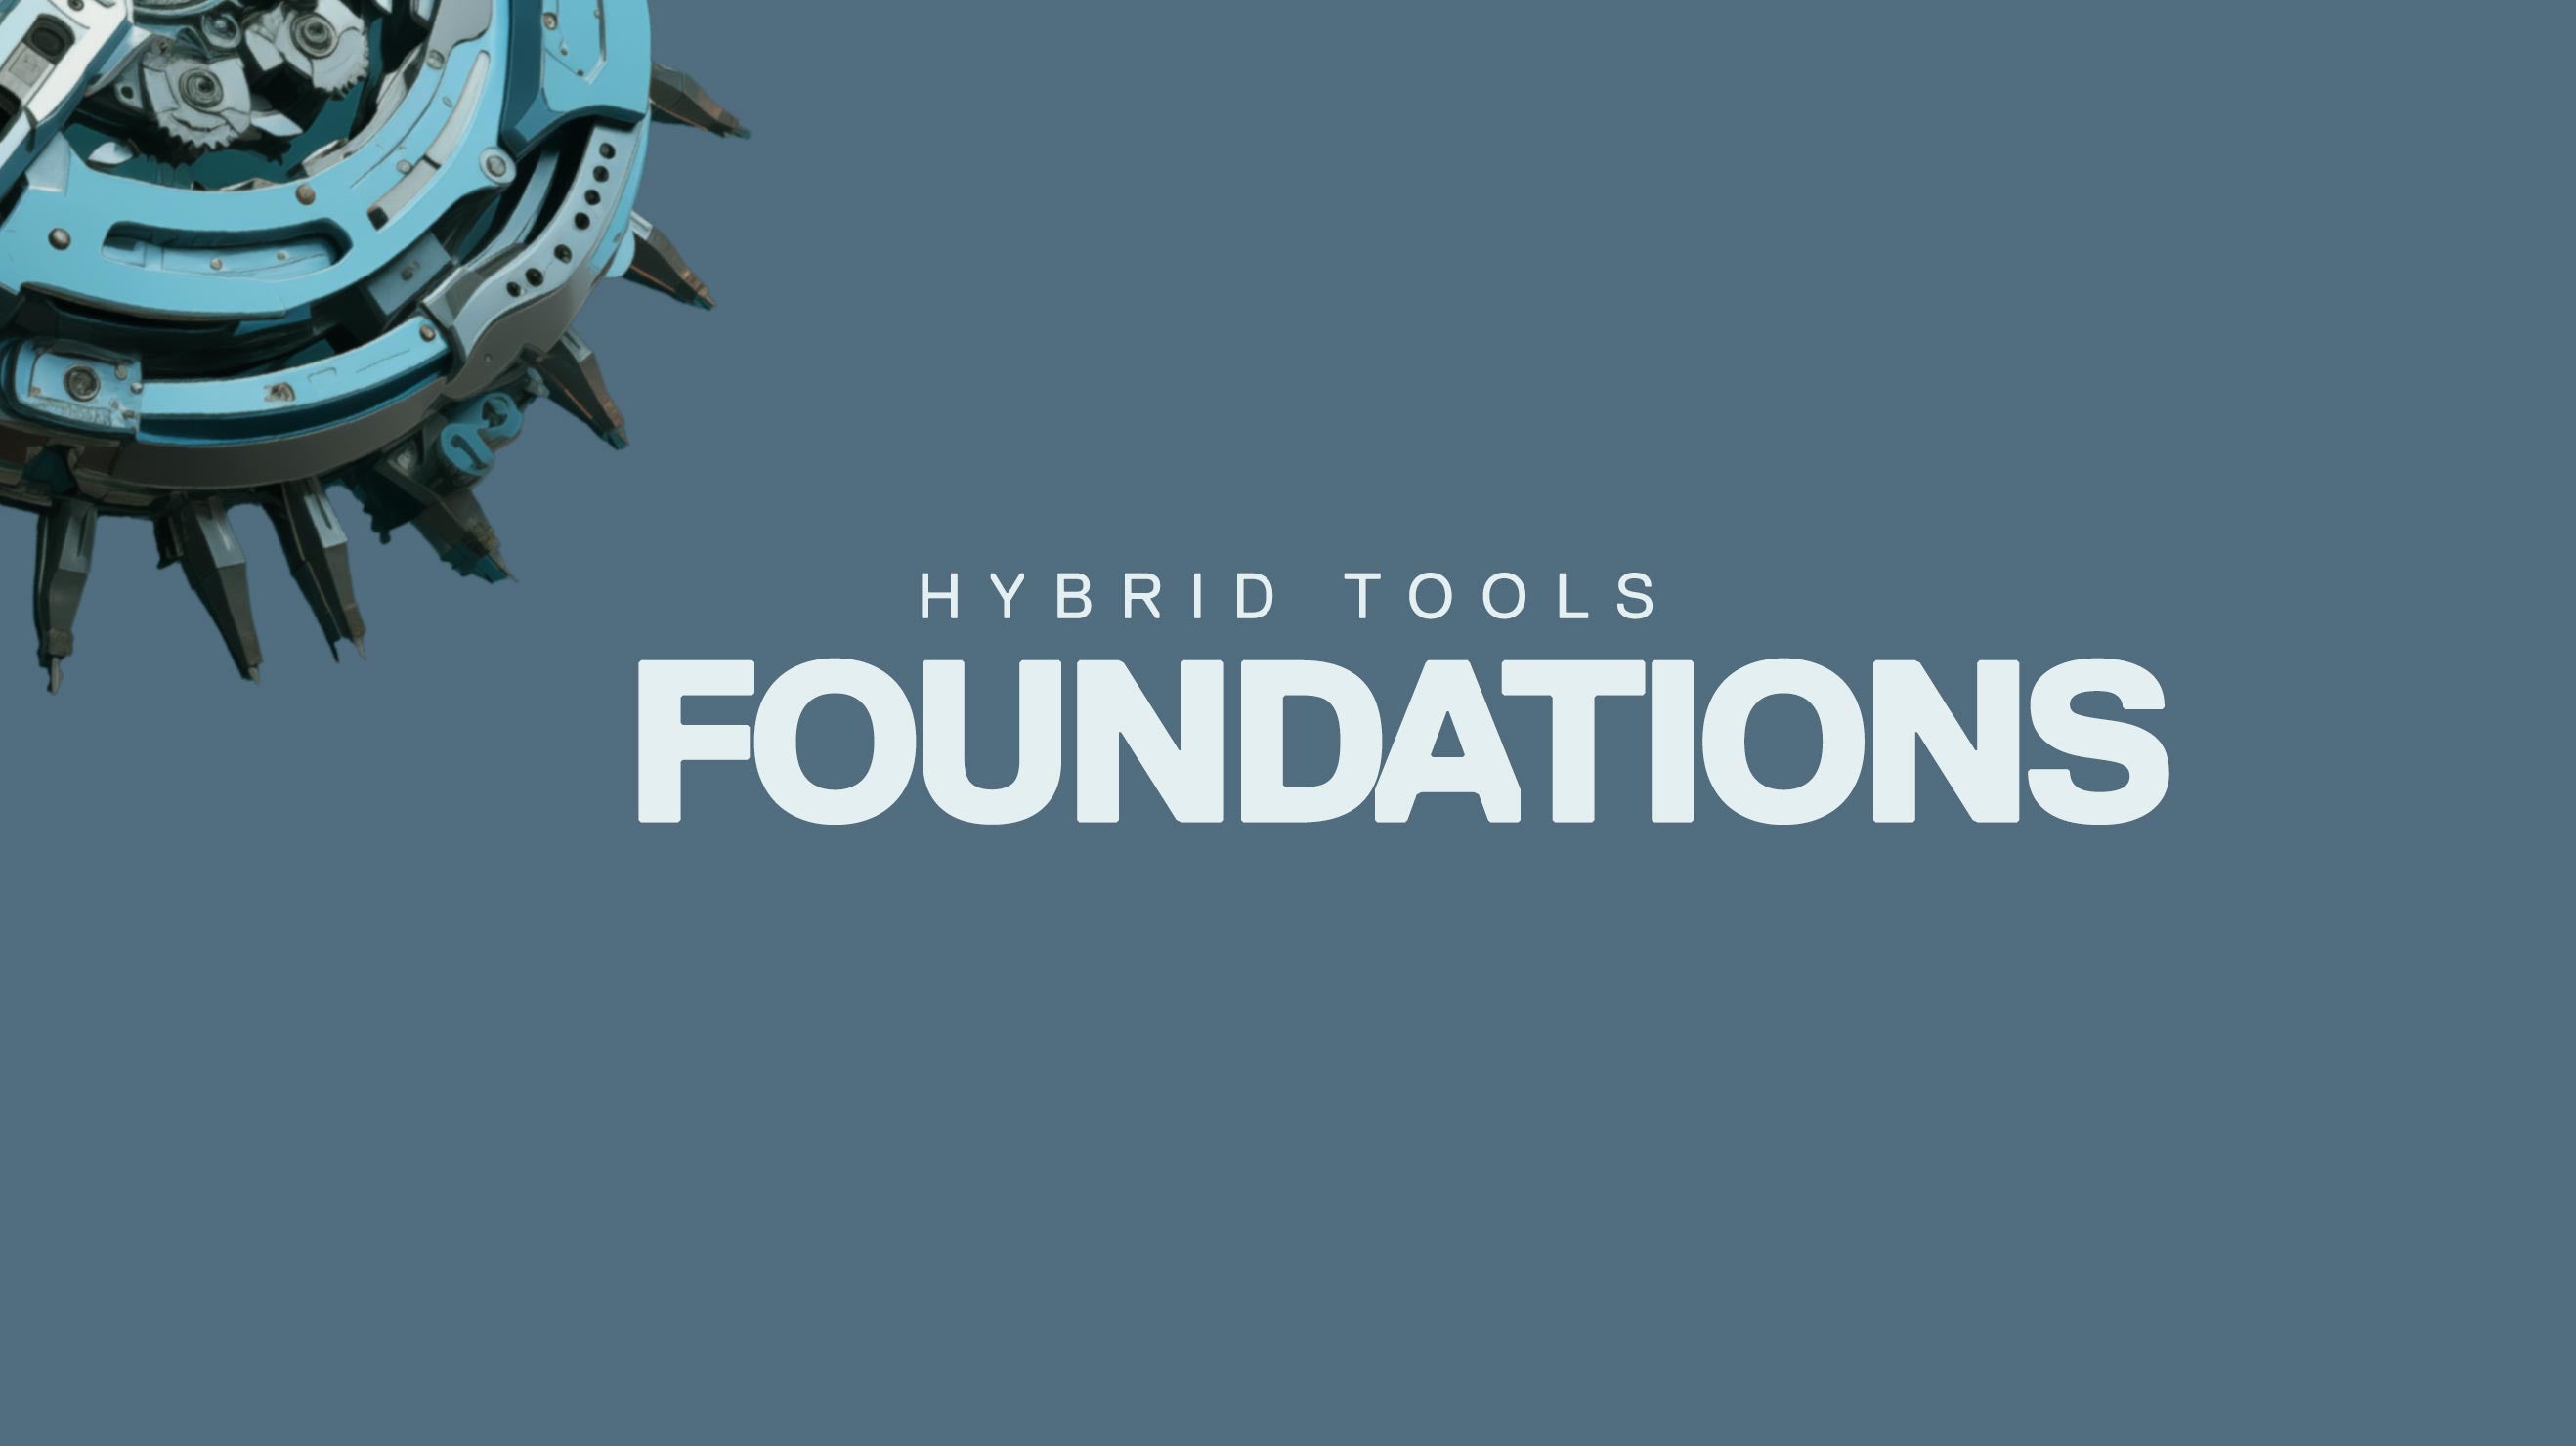 Hybrid Foundations